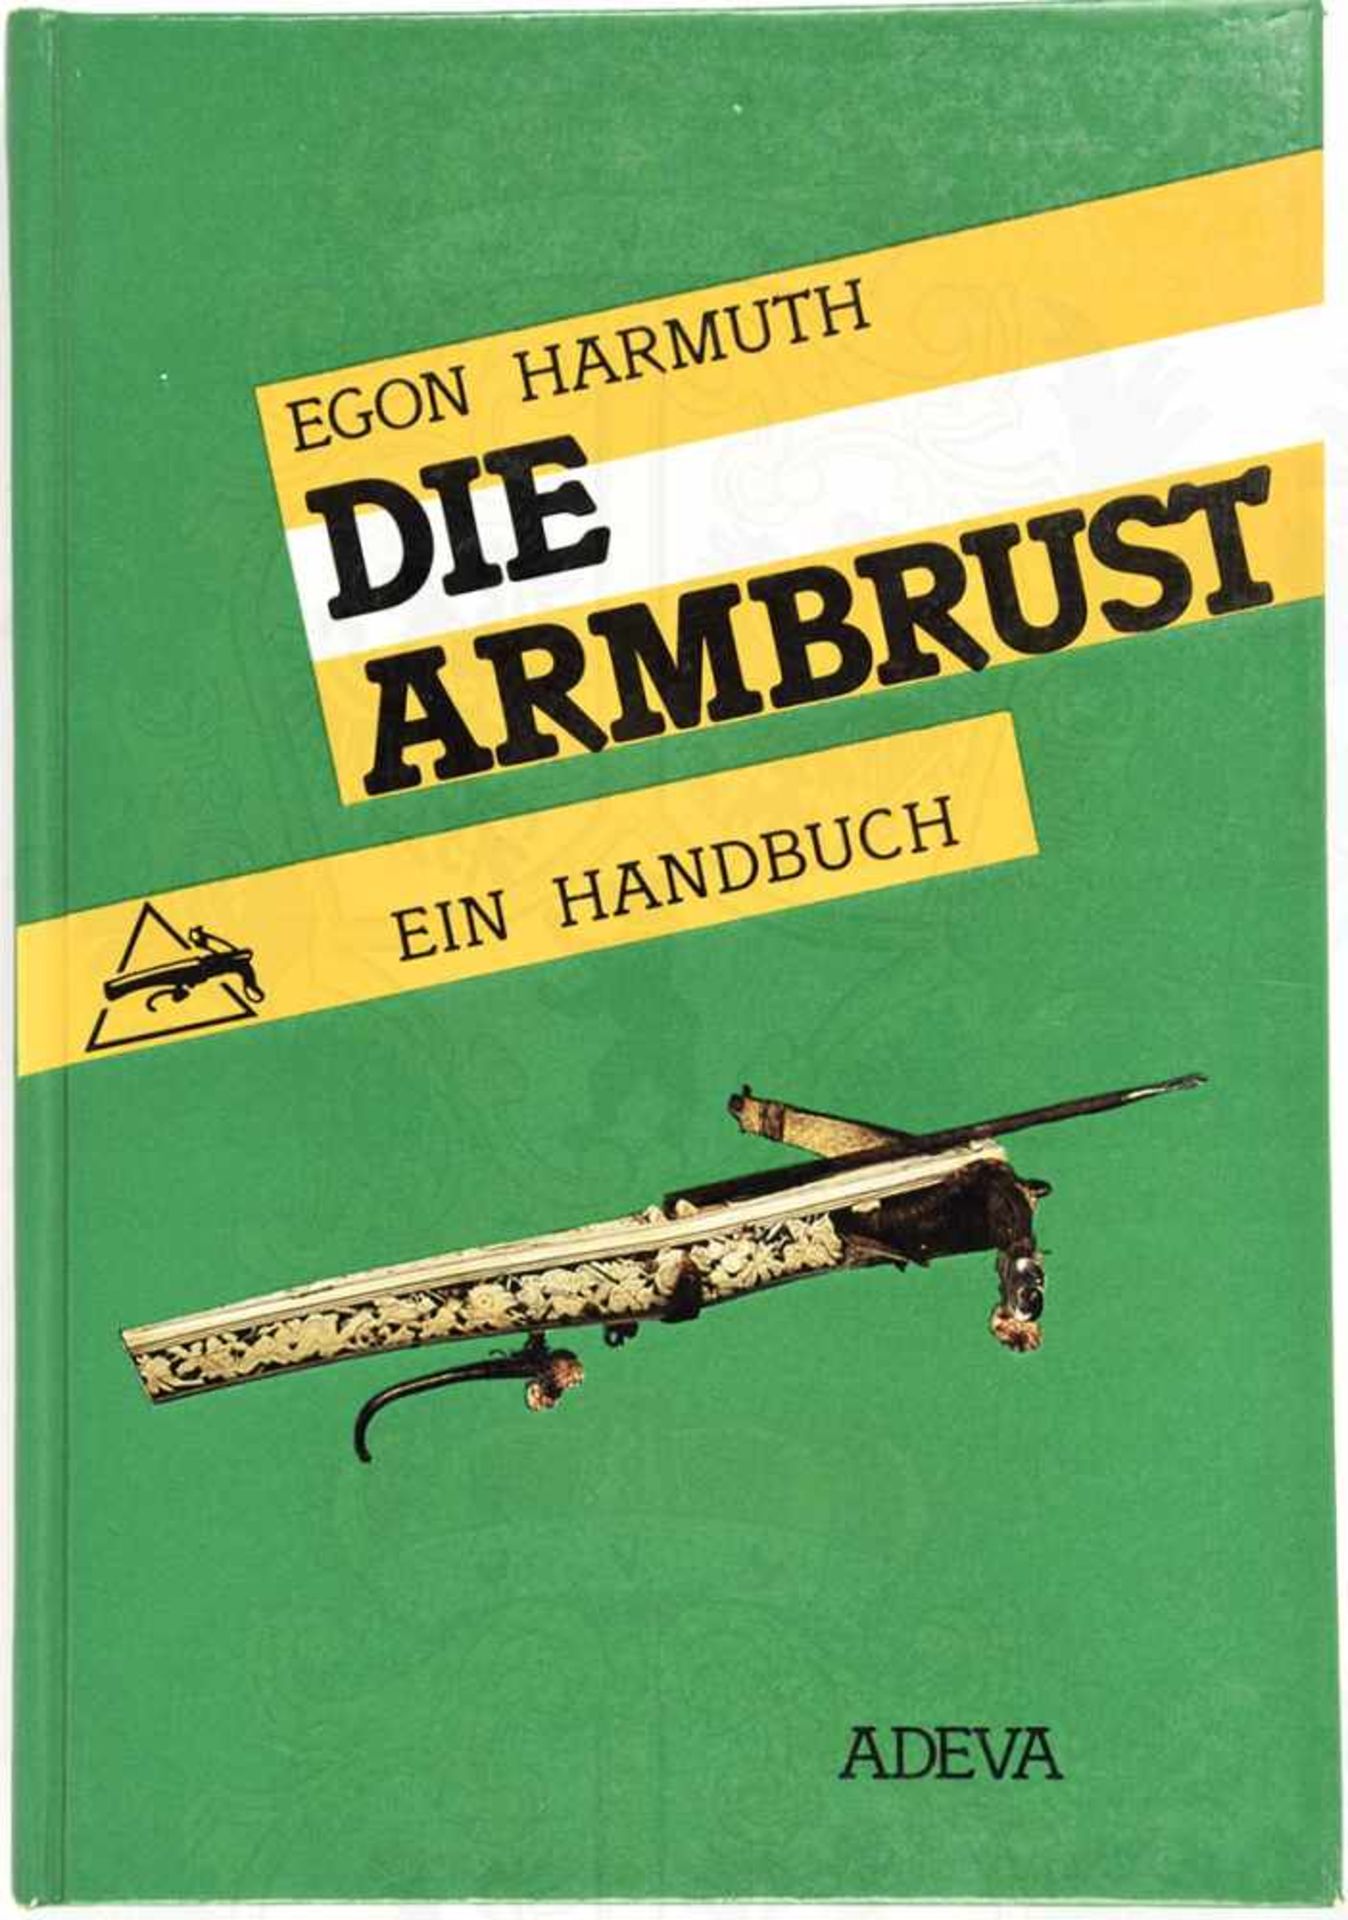 DIE ARMBRUST, „Ein Handbuch“, 1986, 232 S., Abb., Ex libris des Historikers Dr. Heinrich Müller,